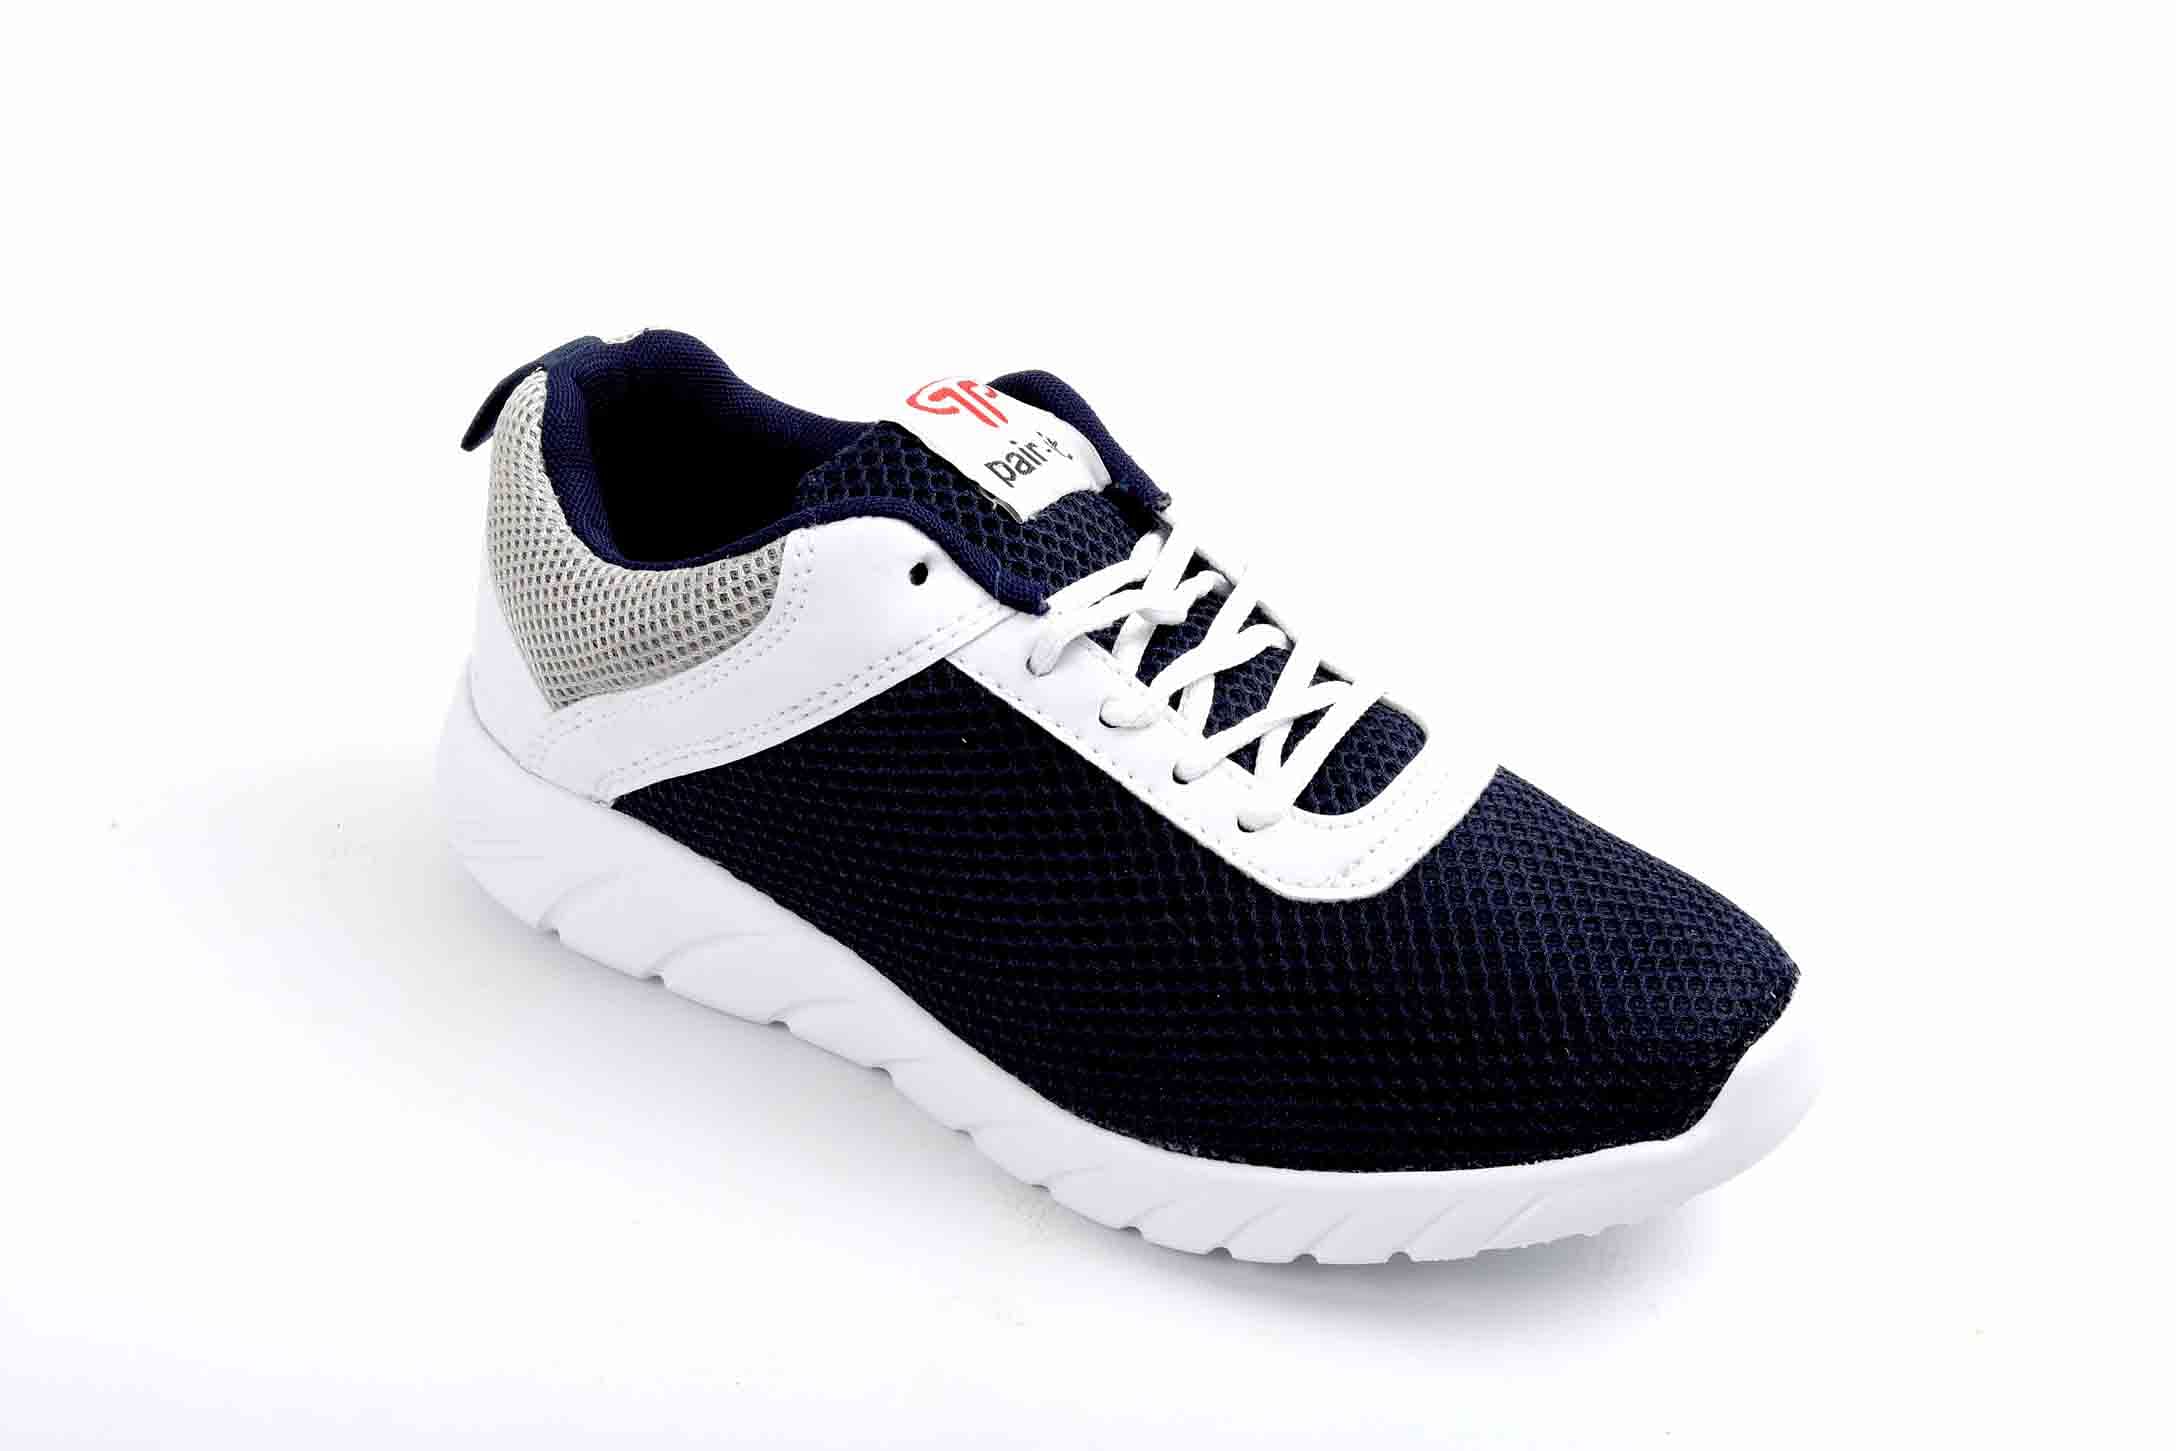 Pair-it Men's Sports Shoes - Blue - LZ-Presto099